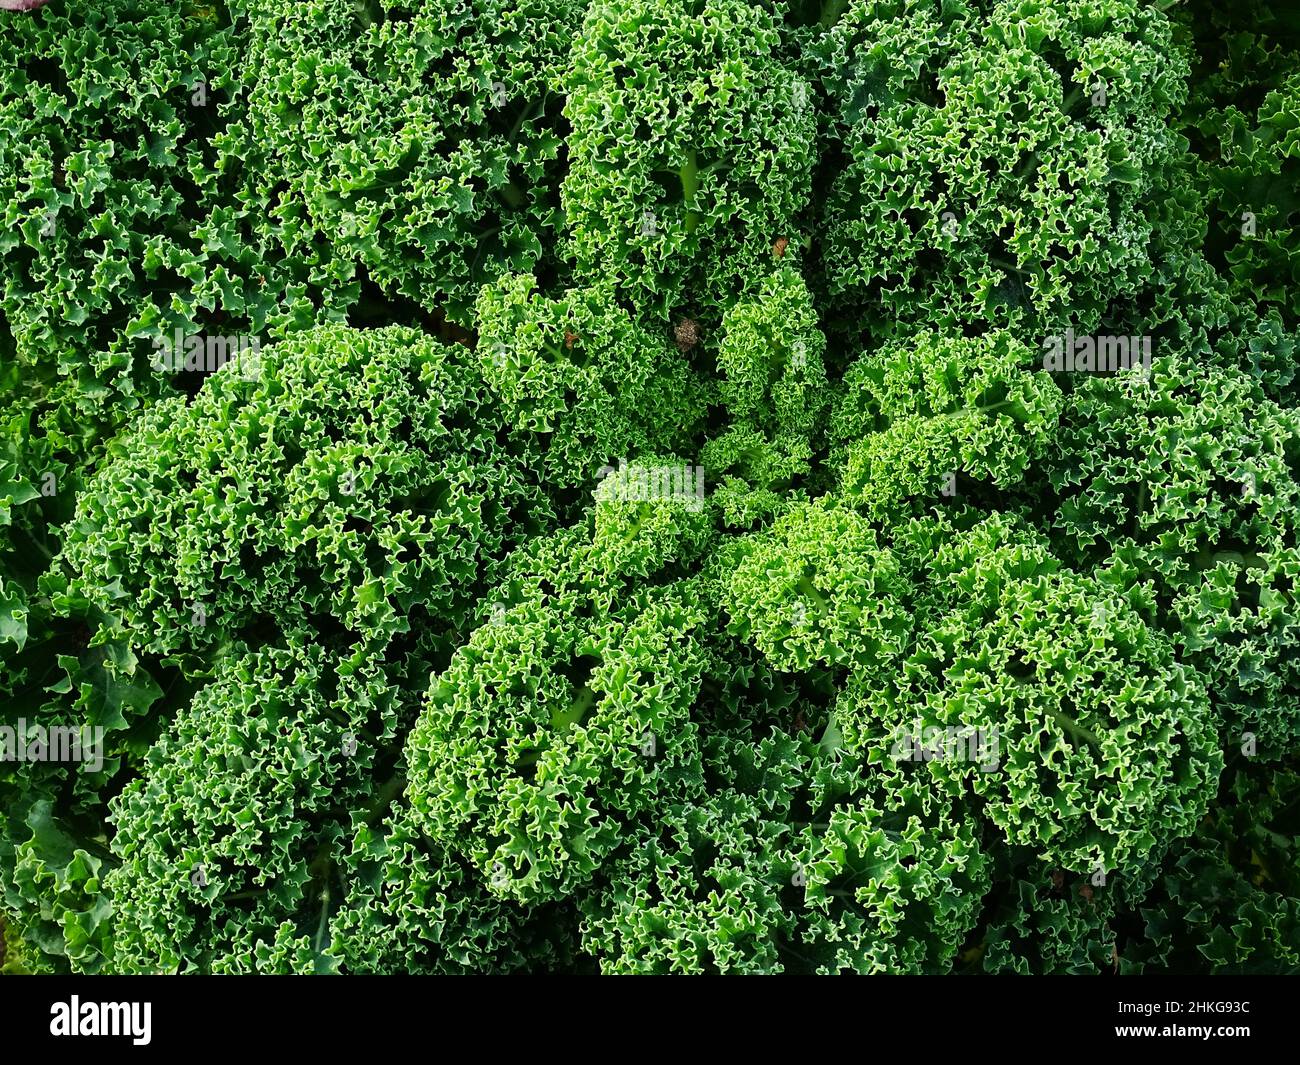 Eine Nahaufnahme der Grünkohl-Pflanze (Brassica oleracea) im Gemüsegarten, die im November gemacht wurde, wenn der Grünkohl voll mit Blättern ist, mit den Farben Grün und Dunkelgrün Stockfoto